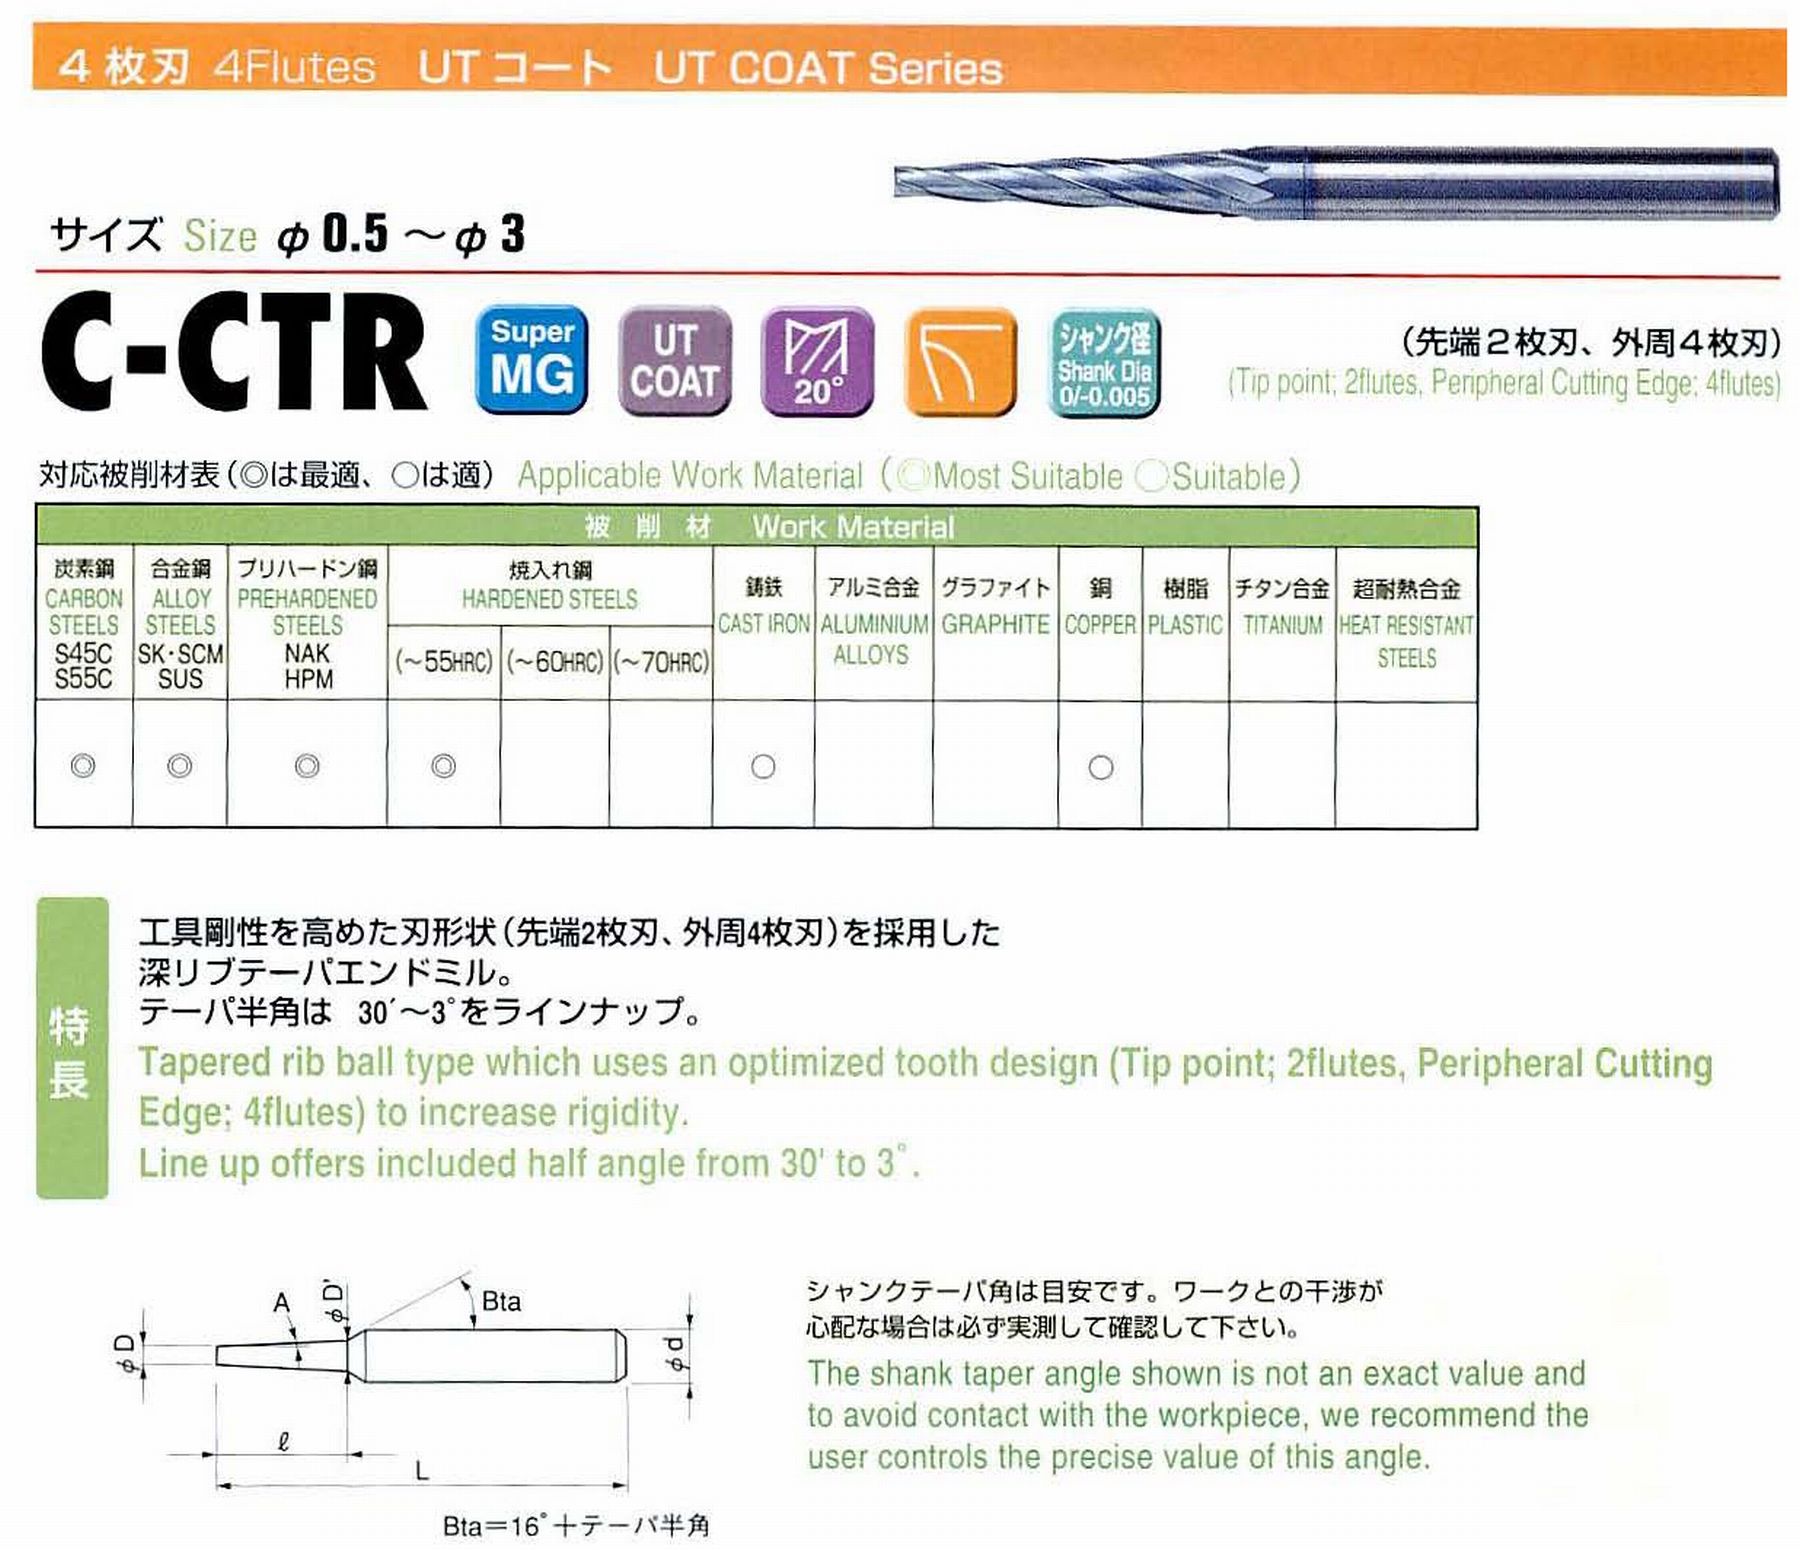 ユニオンツール 4枚刃 C-CTR4016-10-1 先端径1.6 テーパ半角30′ 刃長10 大端径1.77 全長45 シャンク径4